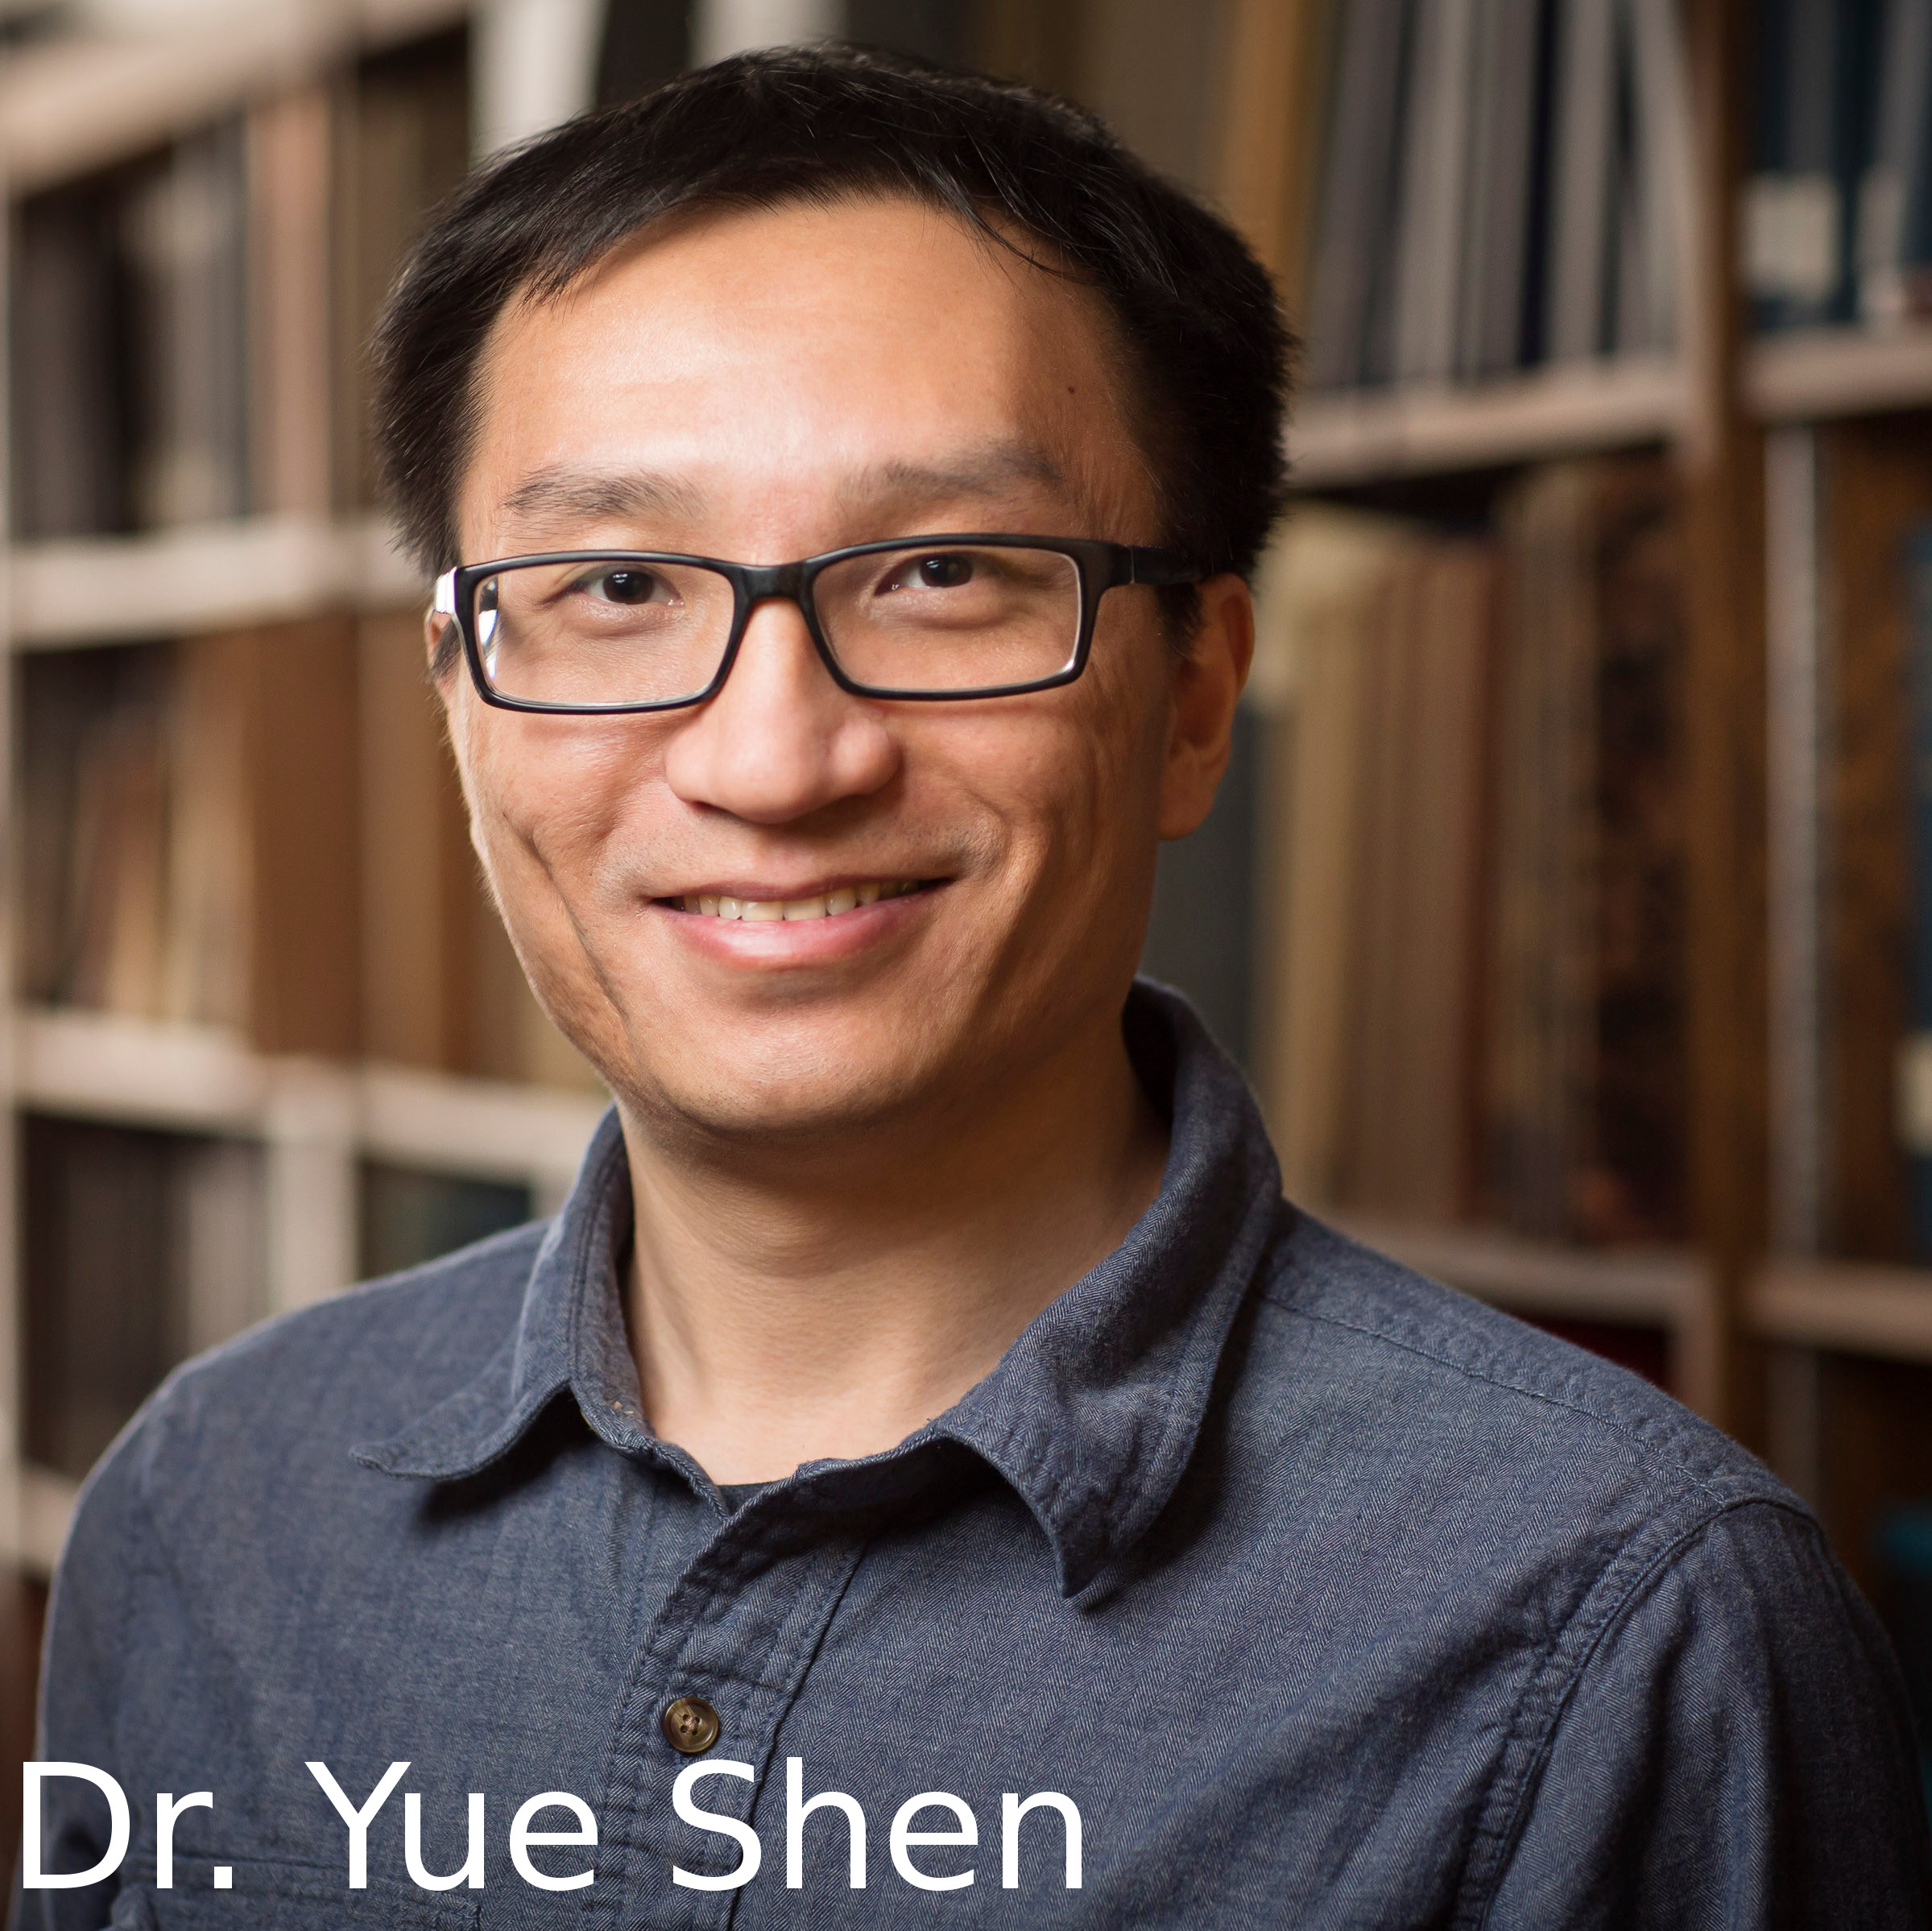 Dr. Yue Shen